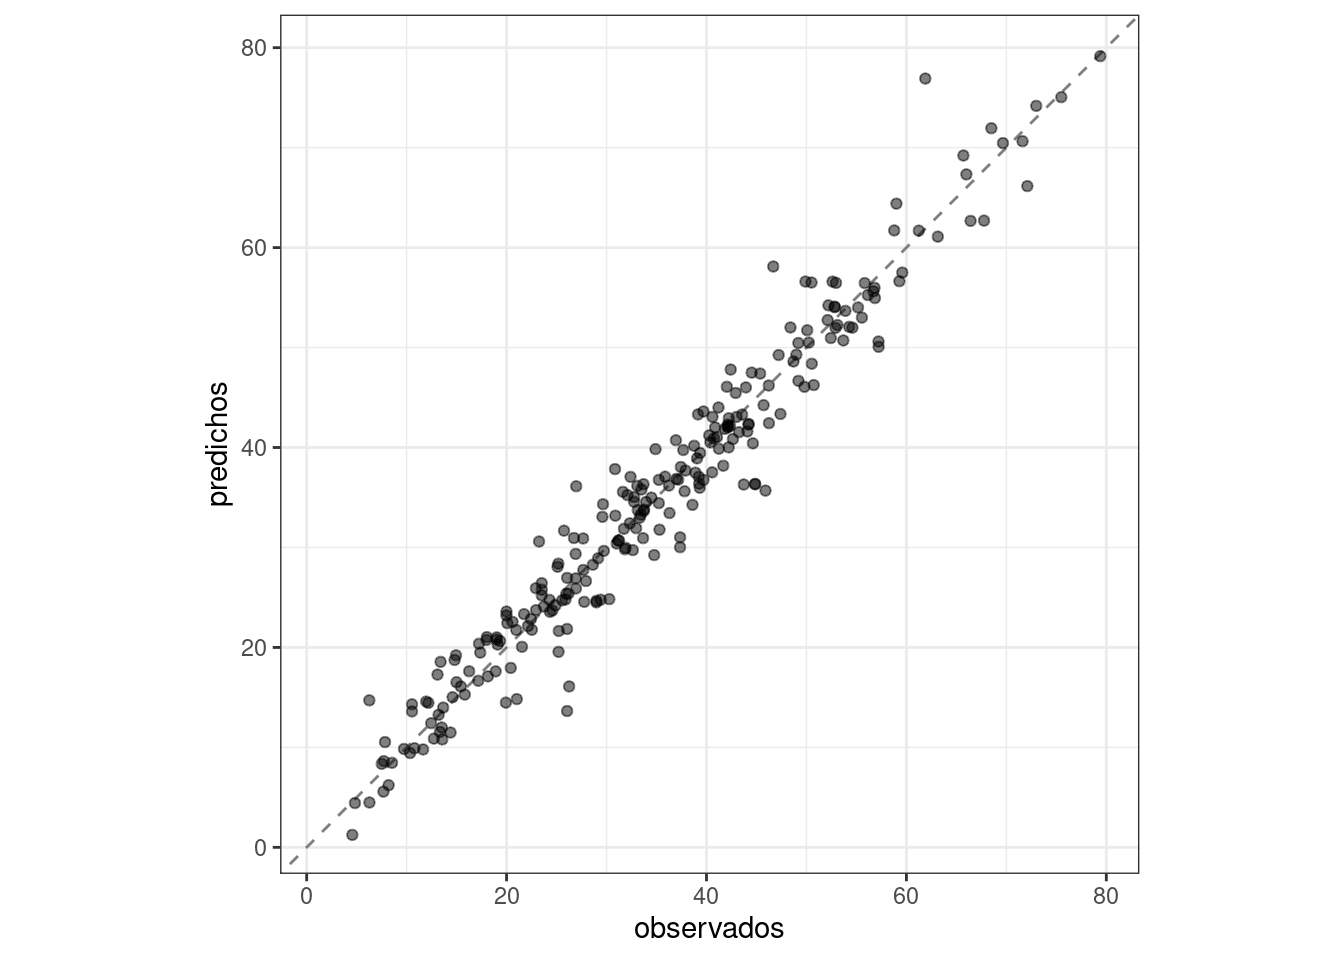 Valores observados versus valores predichos para el conjunto de prueba. Los valores caen estrechamente a lo largo de la línea de identidad de 45 grados.